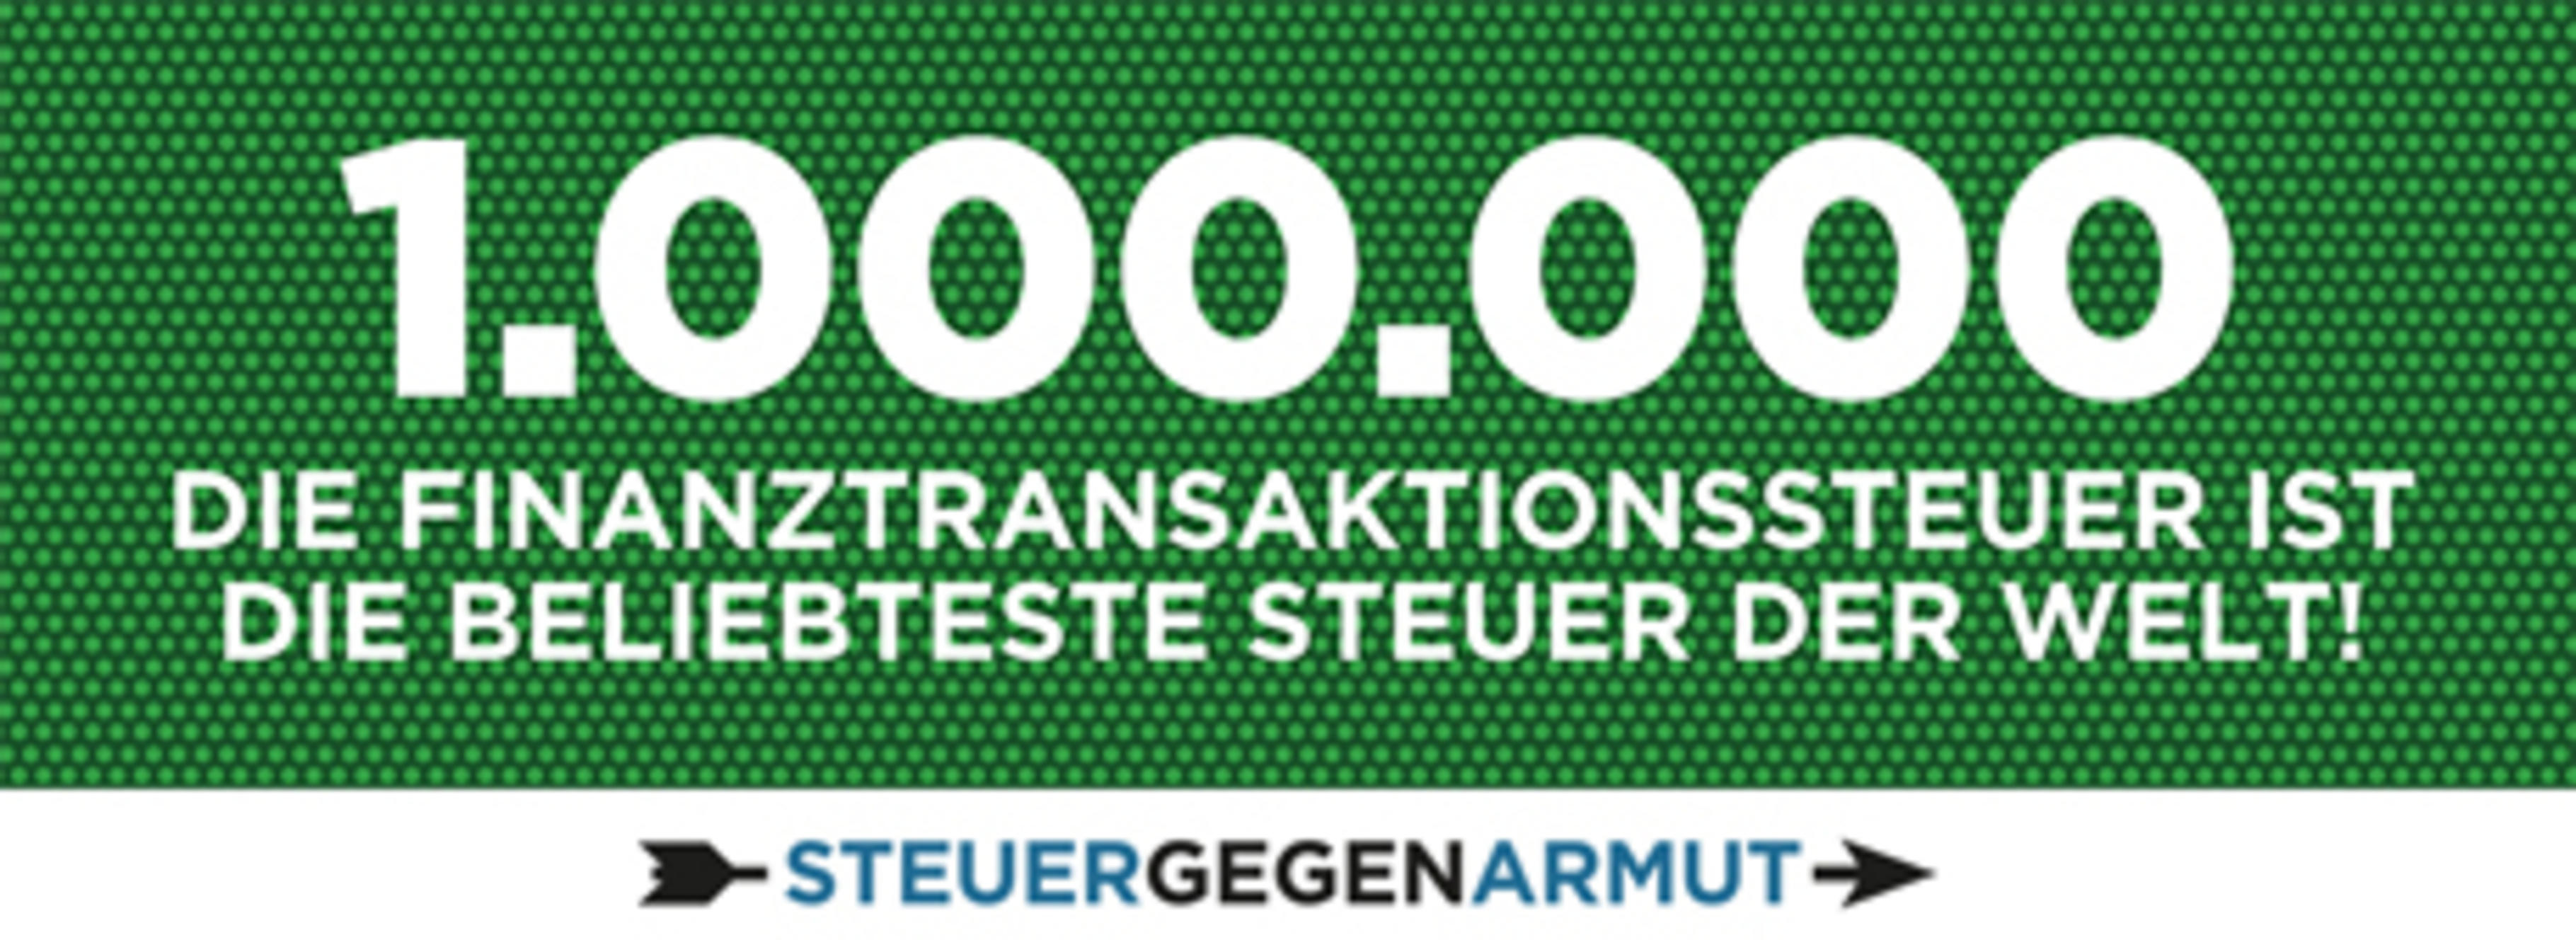 1 Million Unterschriften für die Finanztransaktionssteuer